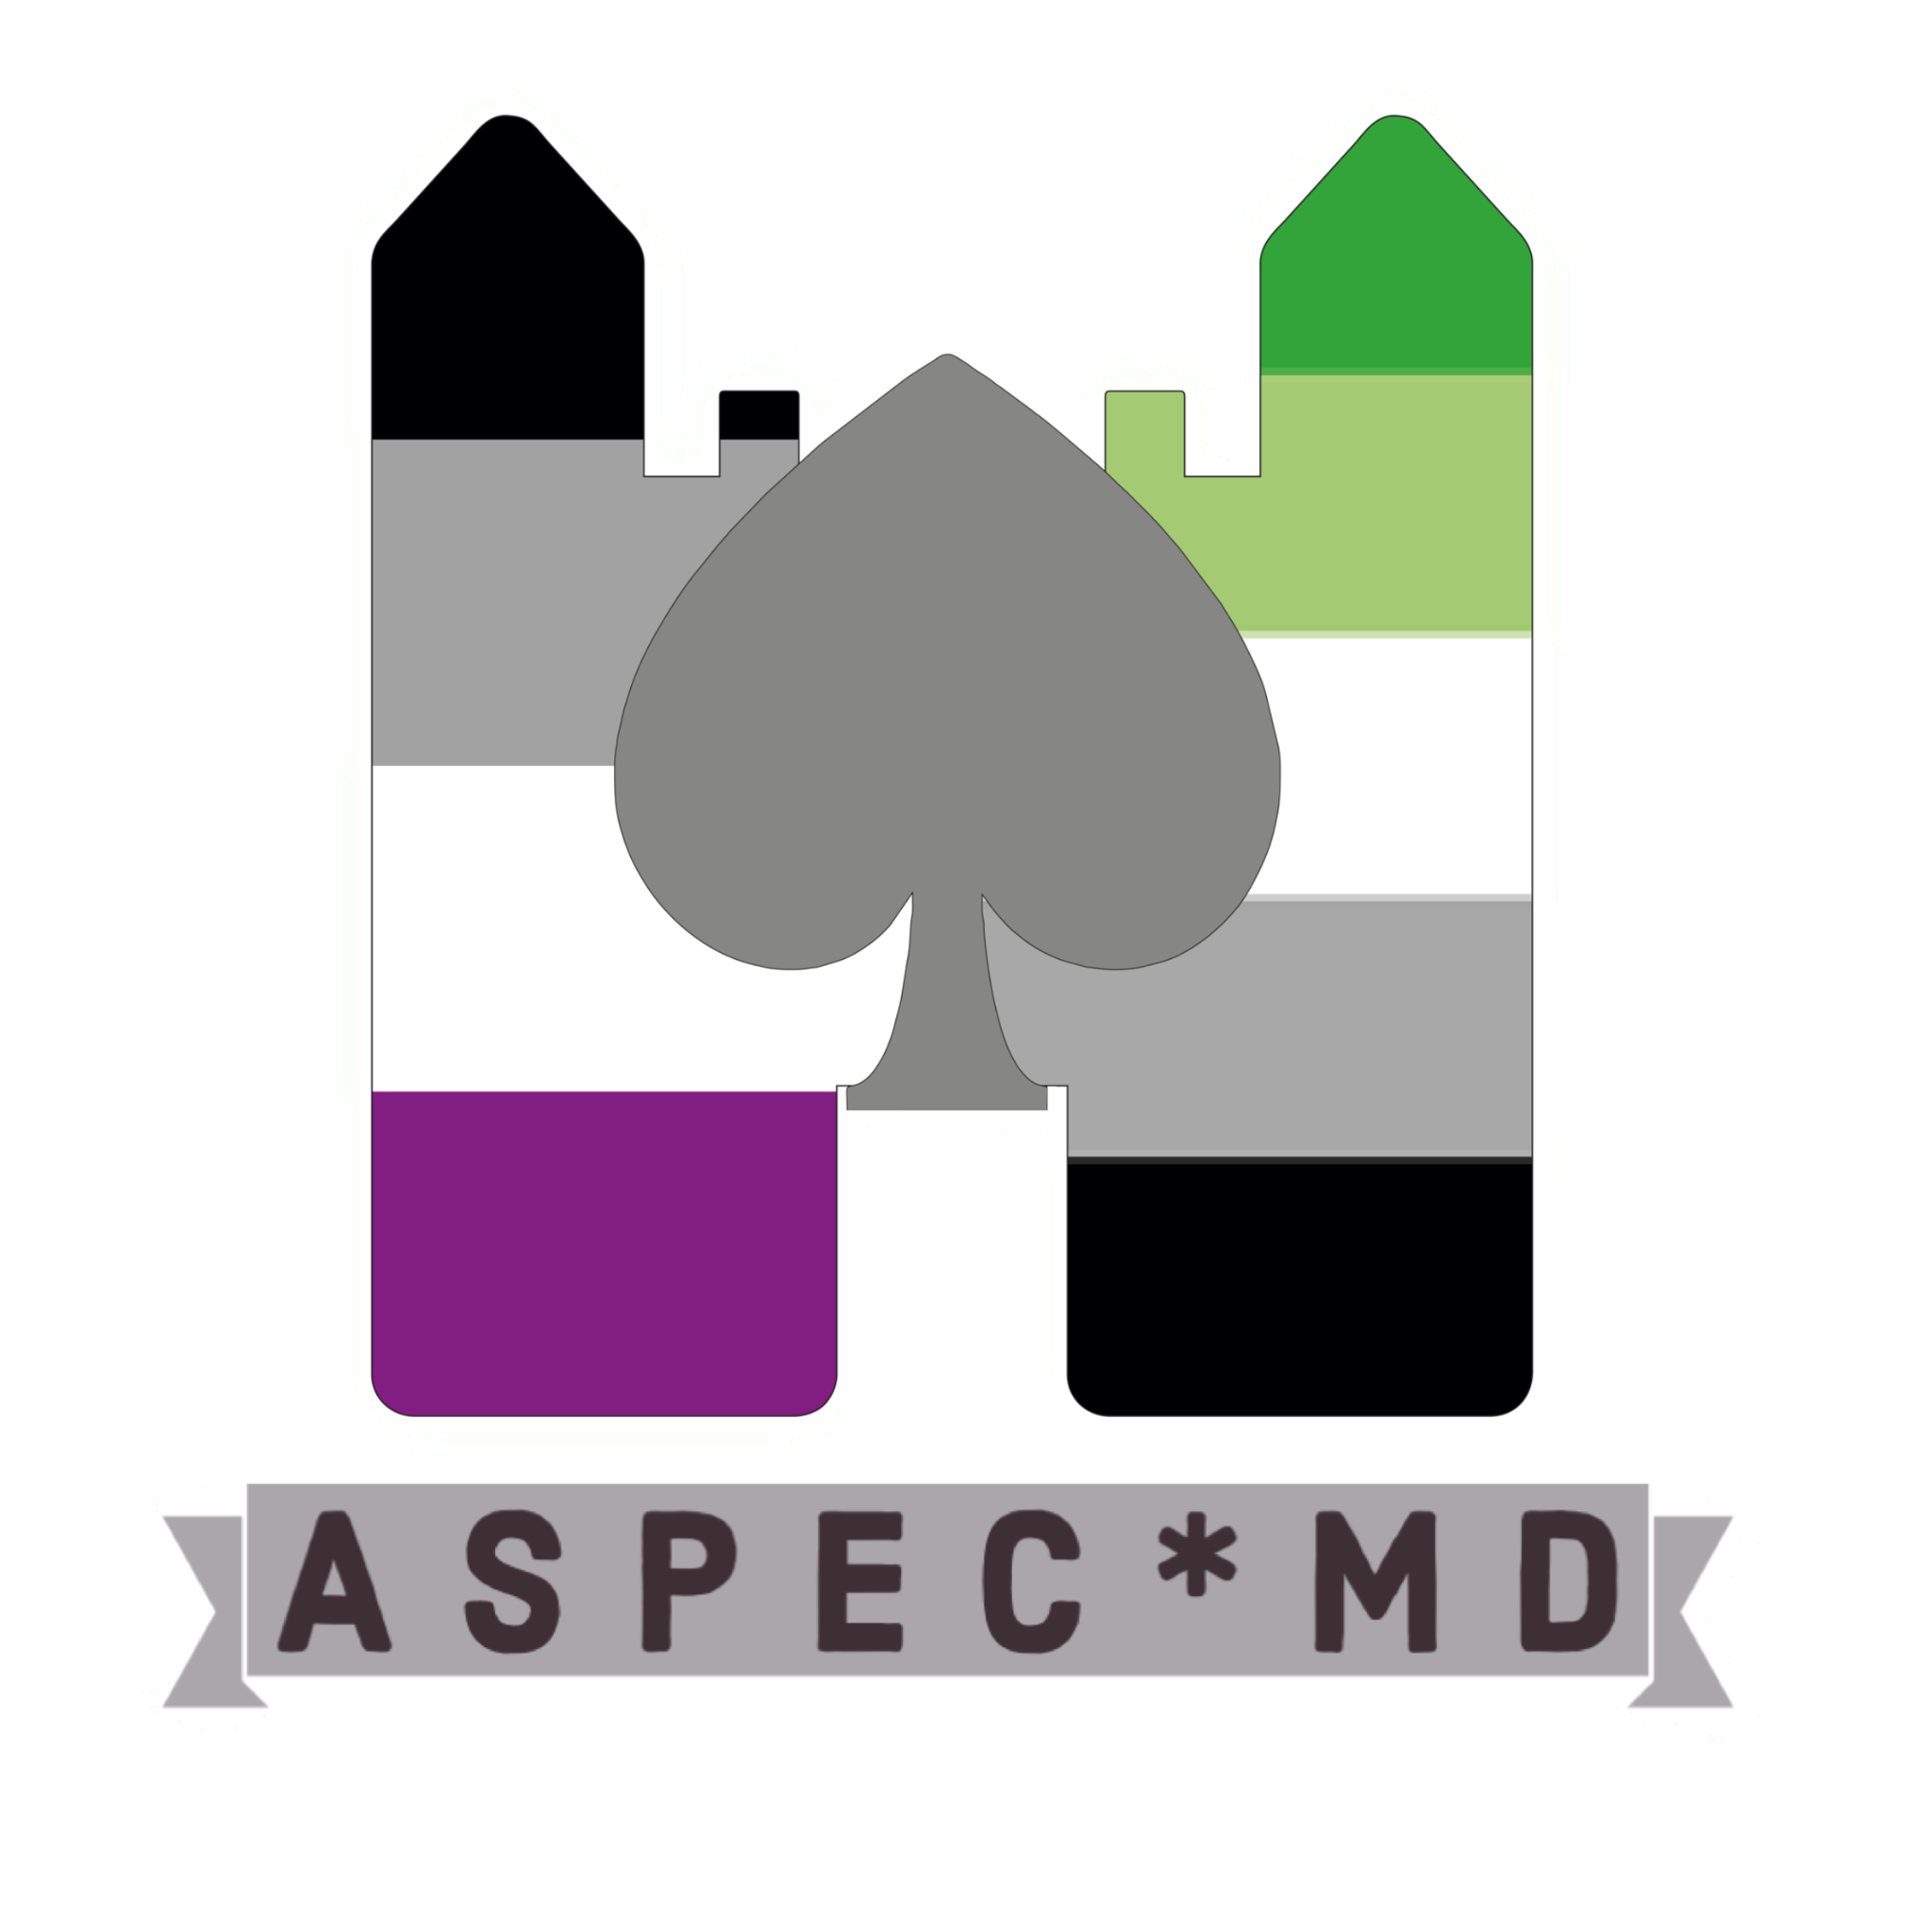 Aspec* MD